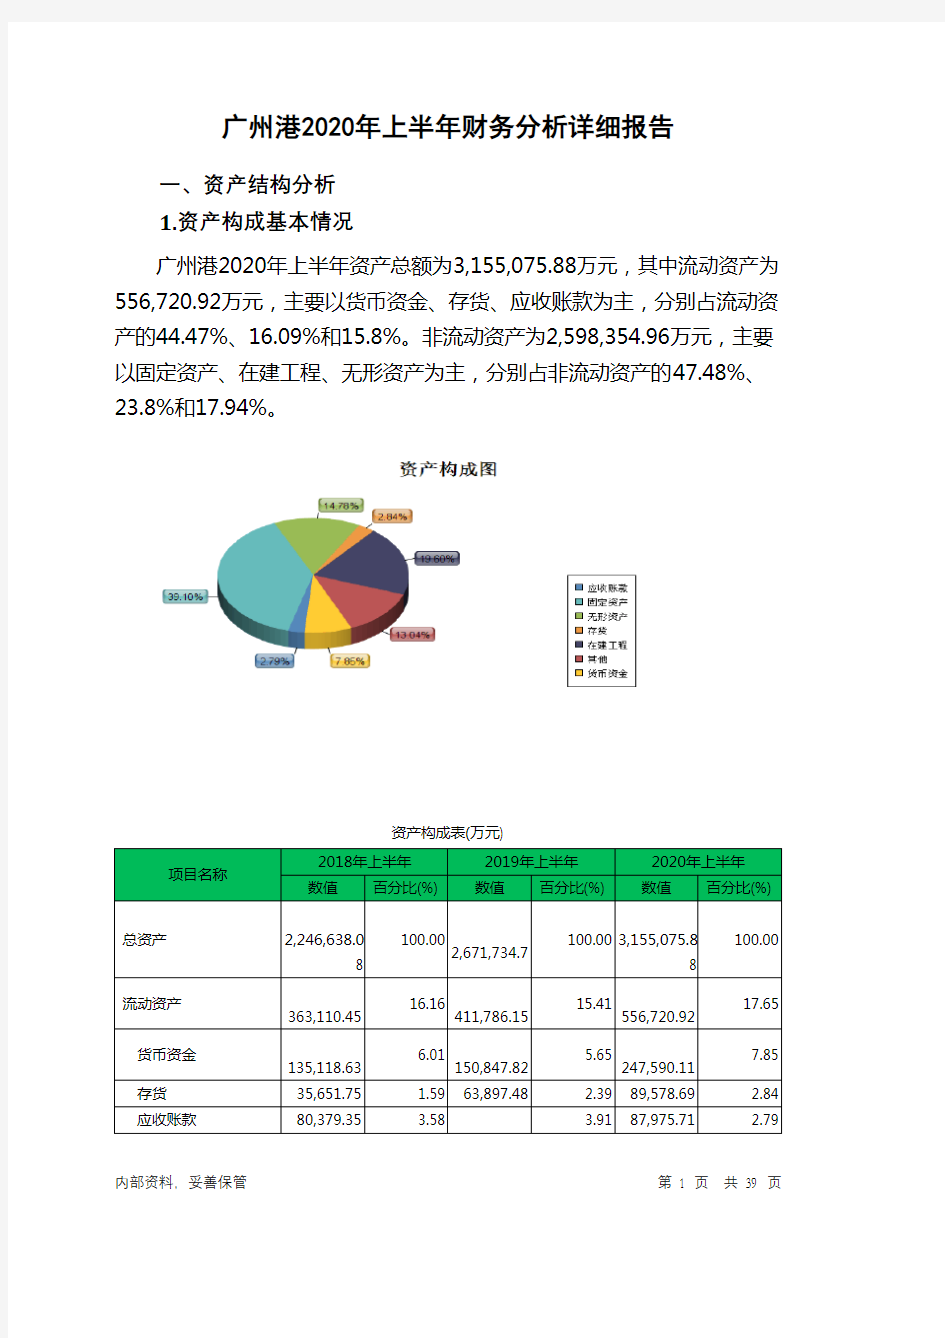 广州港2020年上半年财务分析详细报告